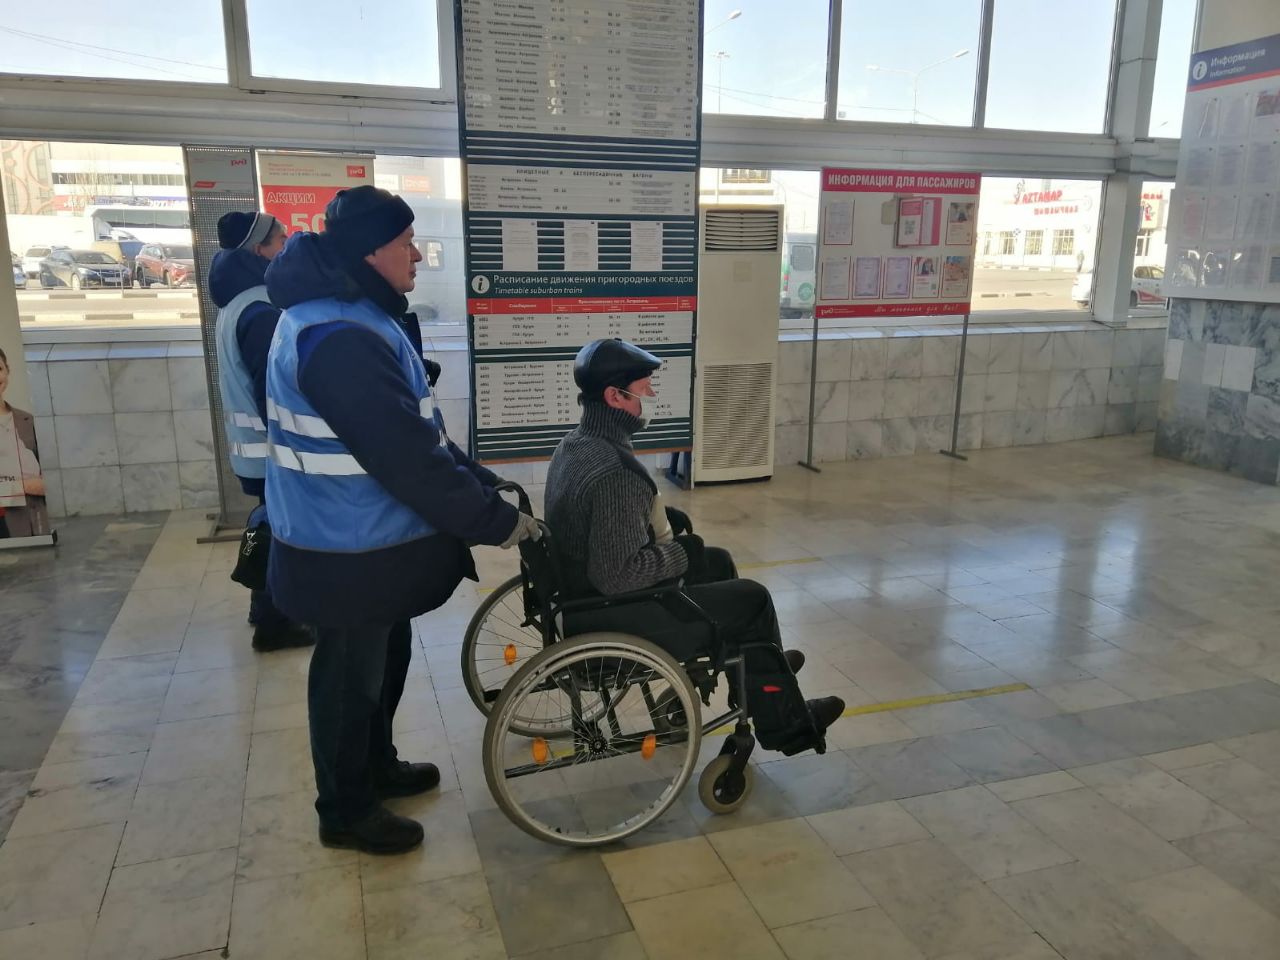 Услугами сопровождения на вокзалах Астраханского региона ПривЖД с начала 2022 года воспользовались около 1,5 тыс. маломобильных граждан